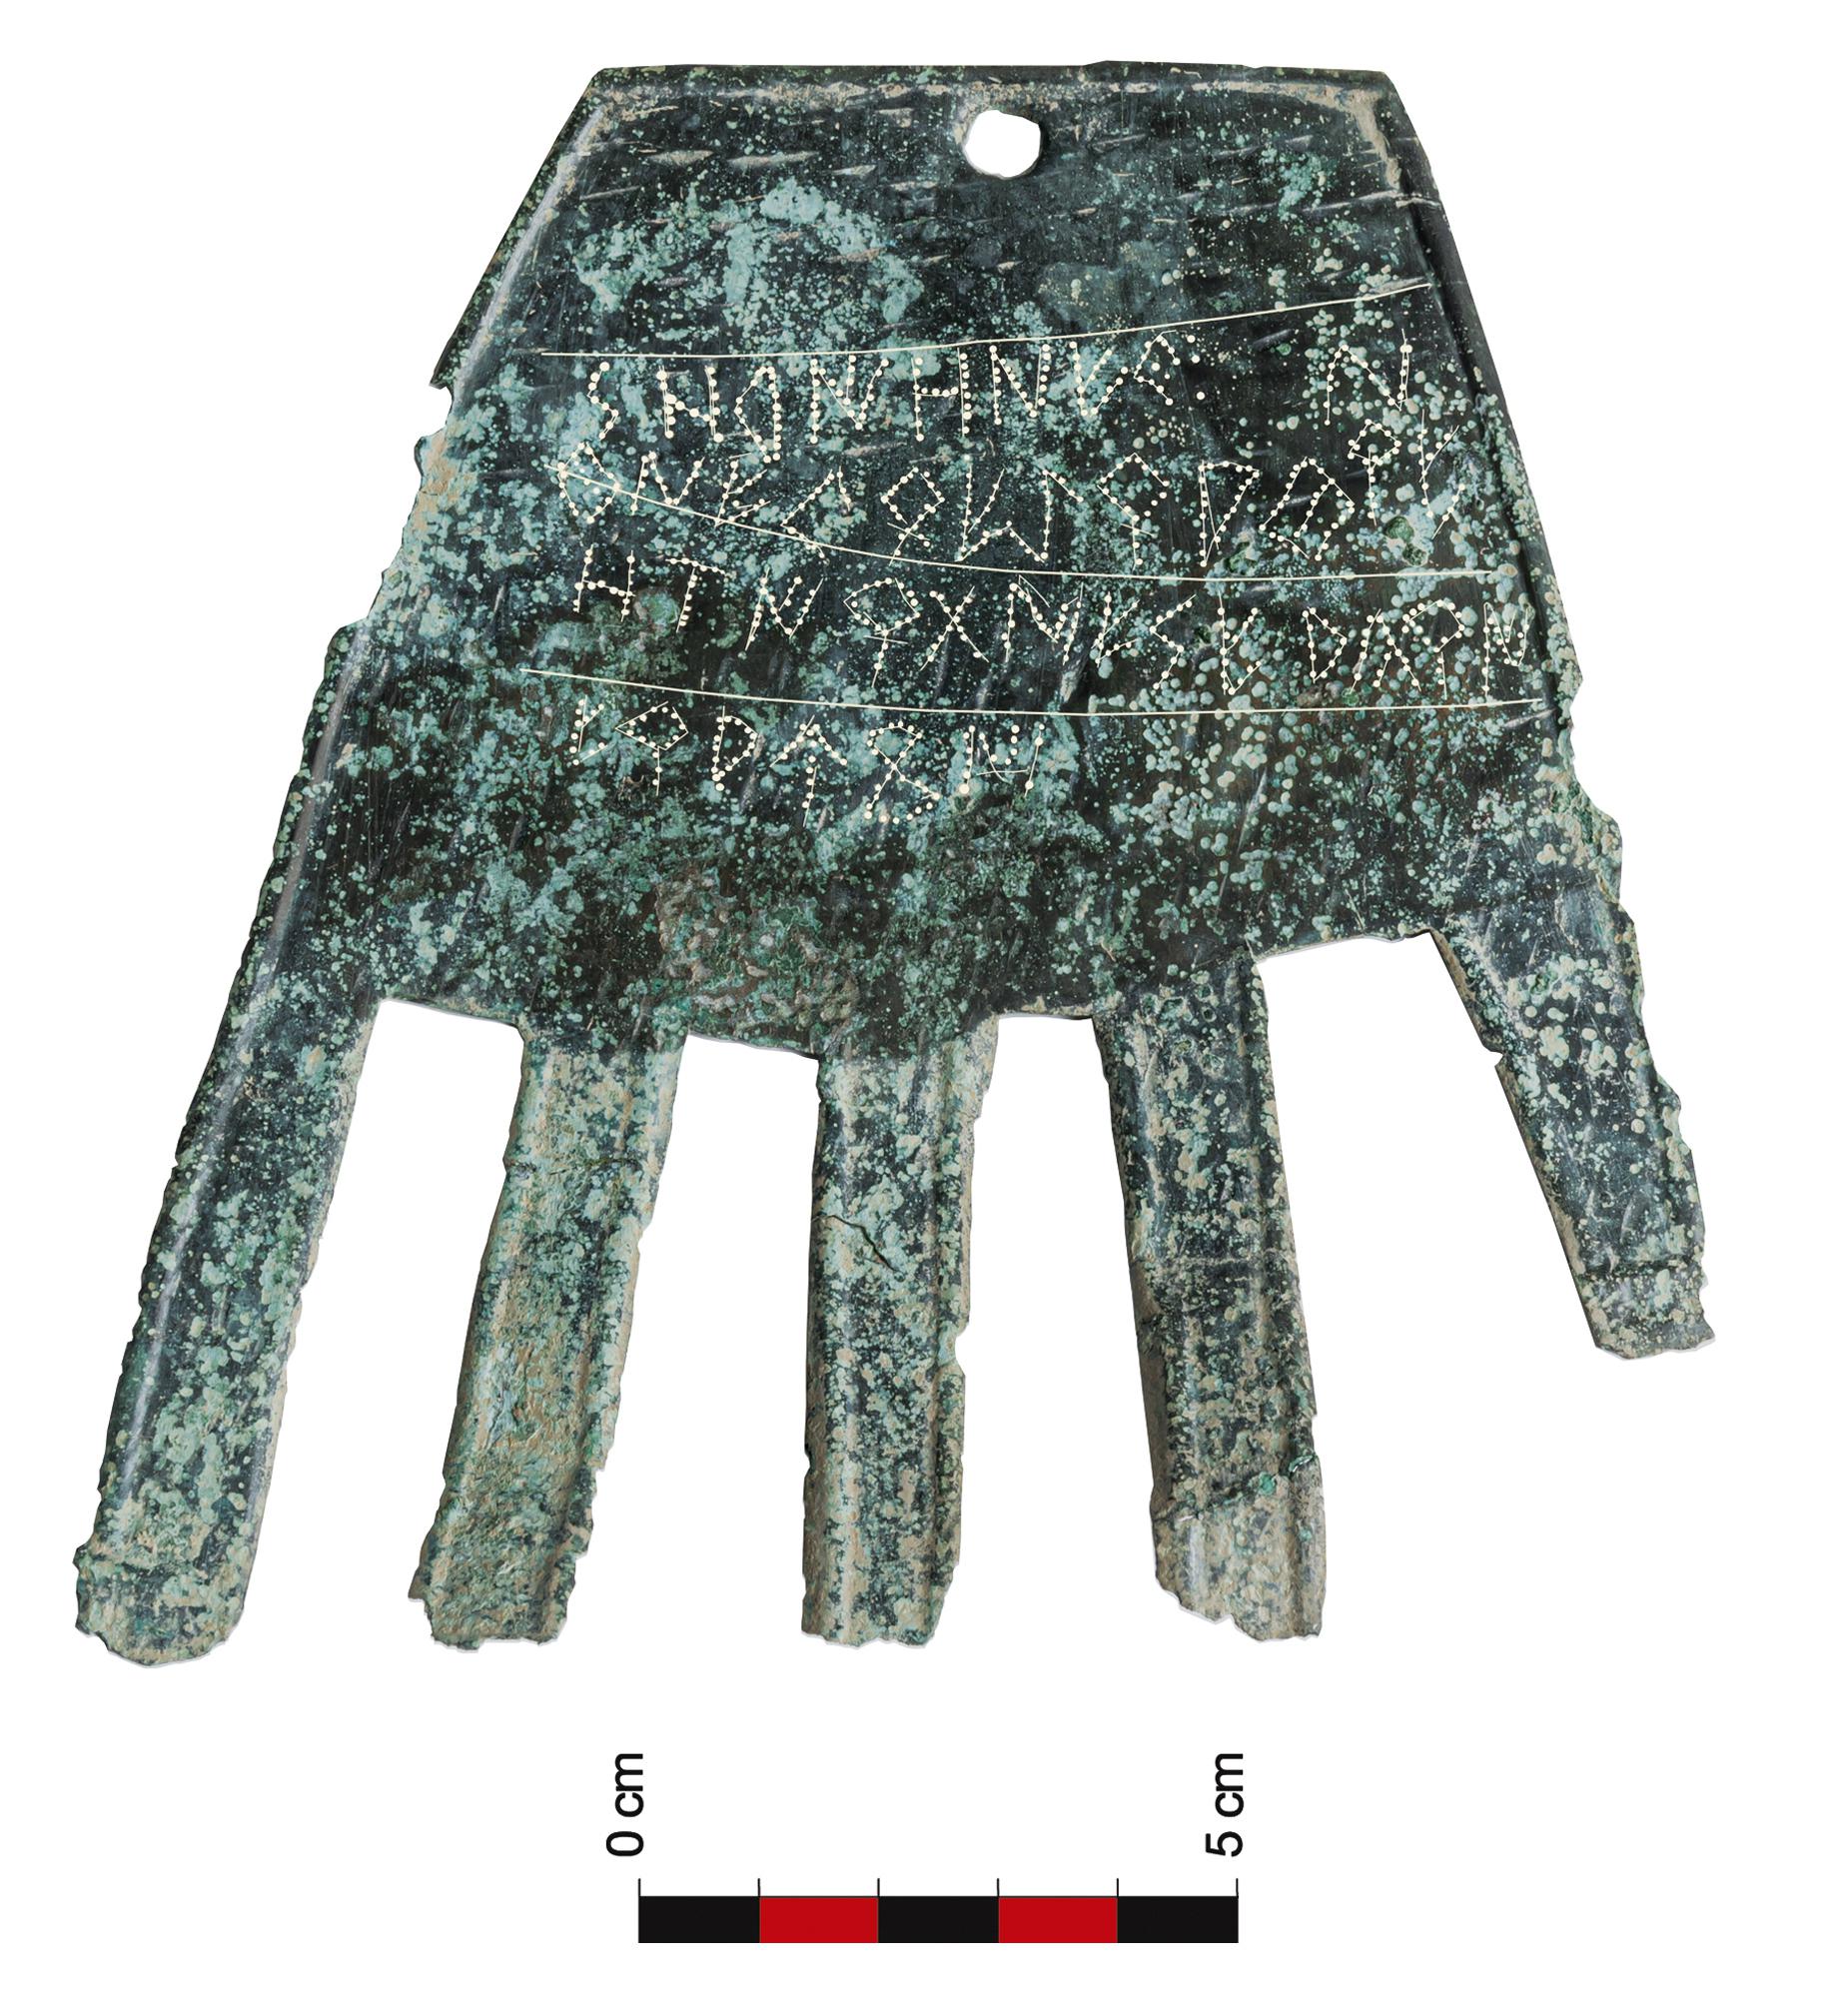 Las palabras de la mano de bronce pueden reescribir el pasado del euskera